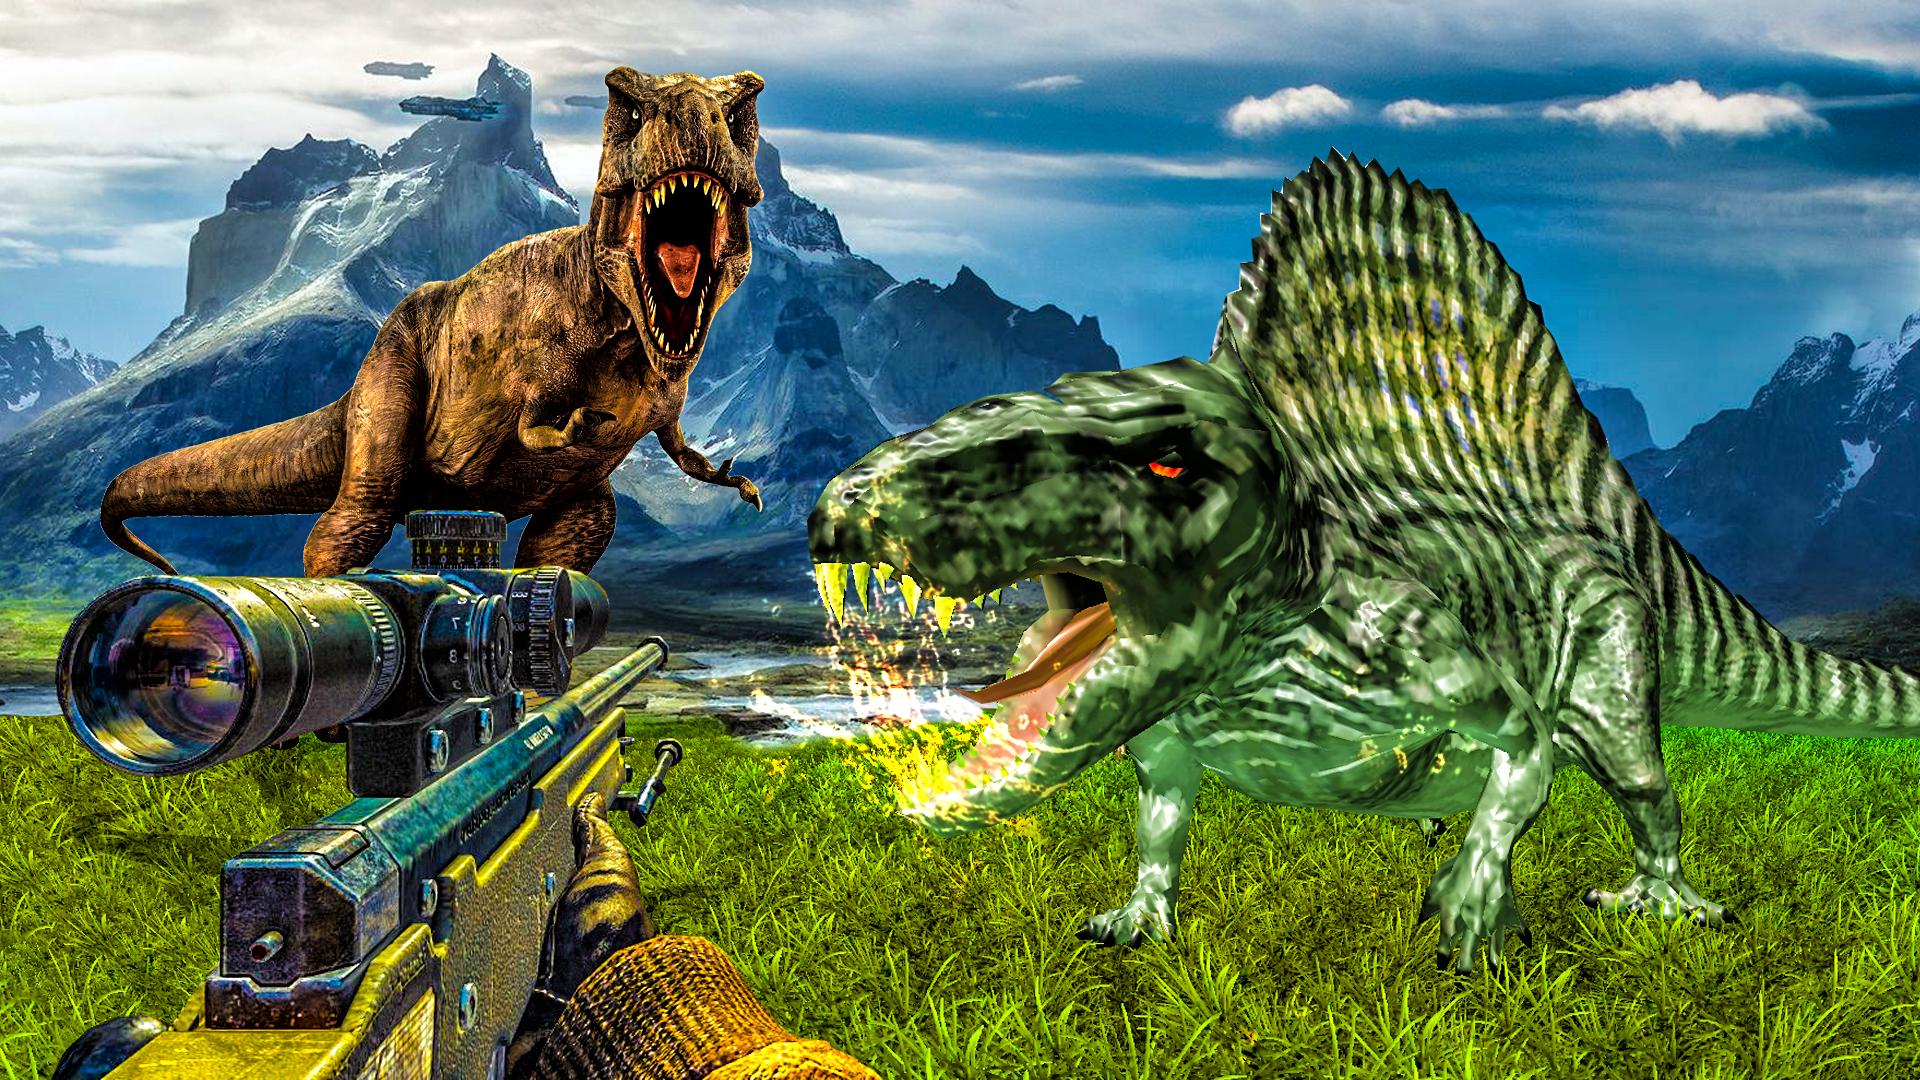 Carnivores Dino hunter game-Dinosaur game shooting 9.1 Screenshot 14